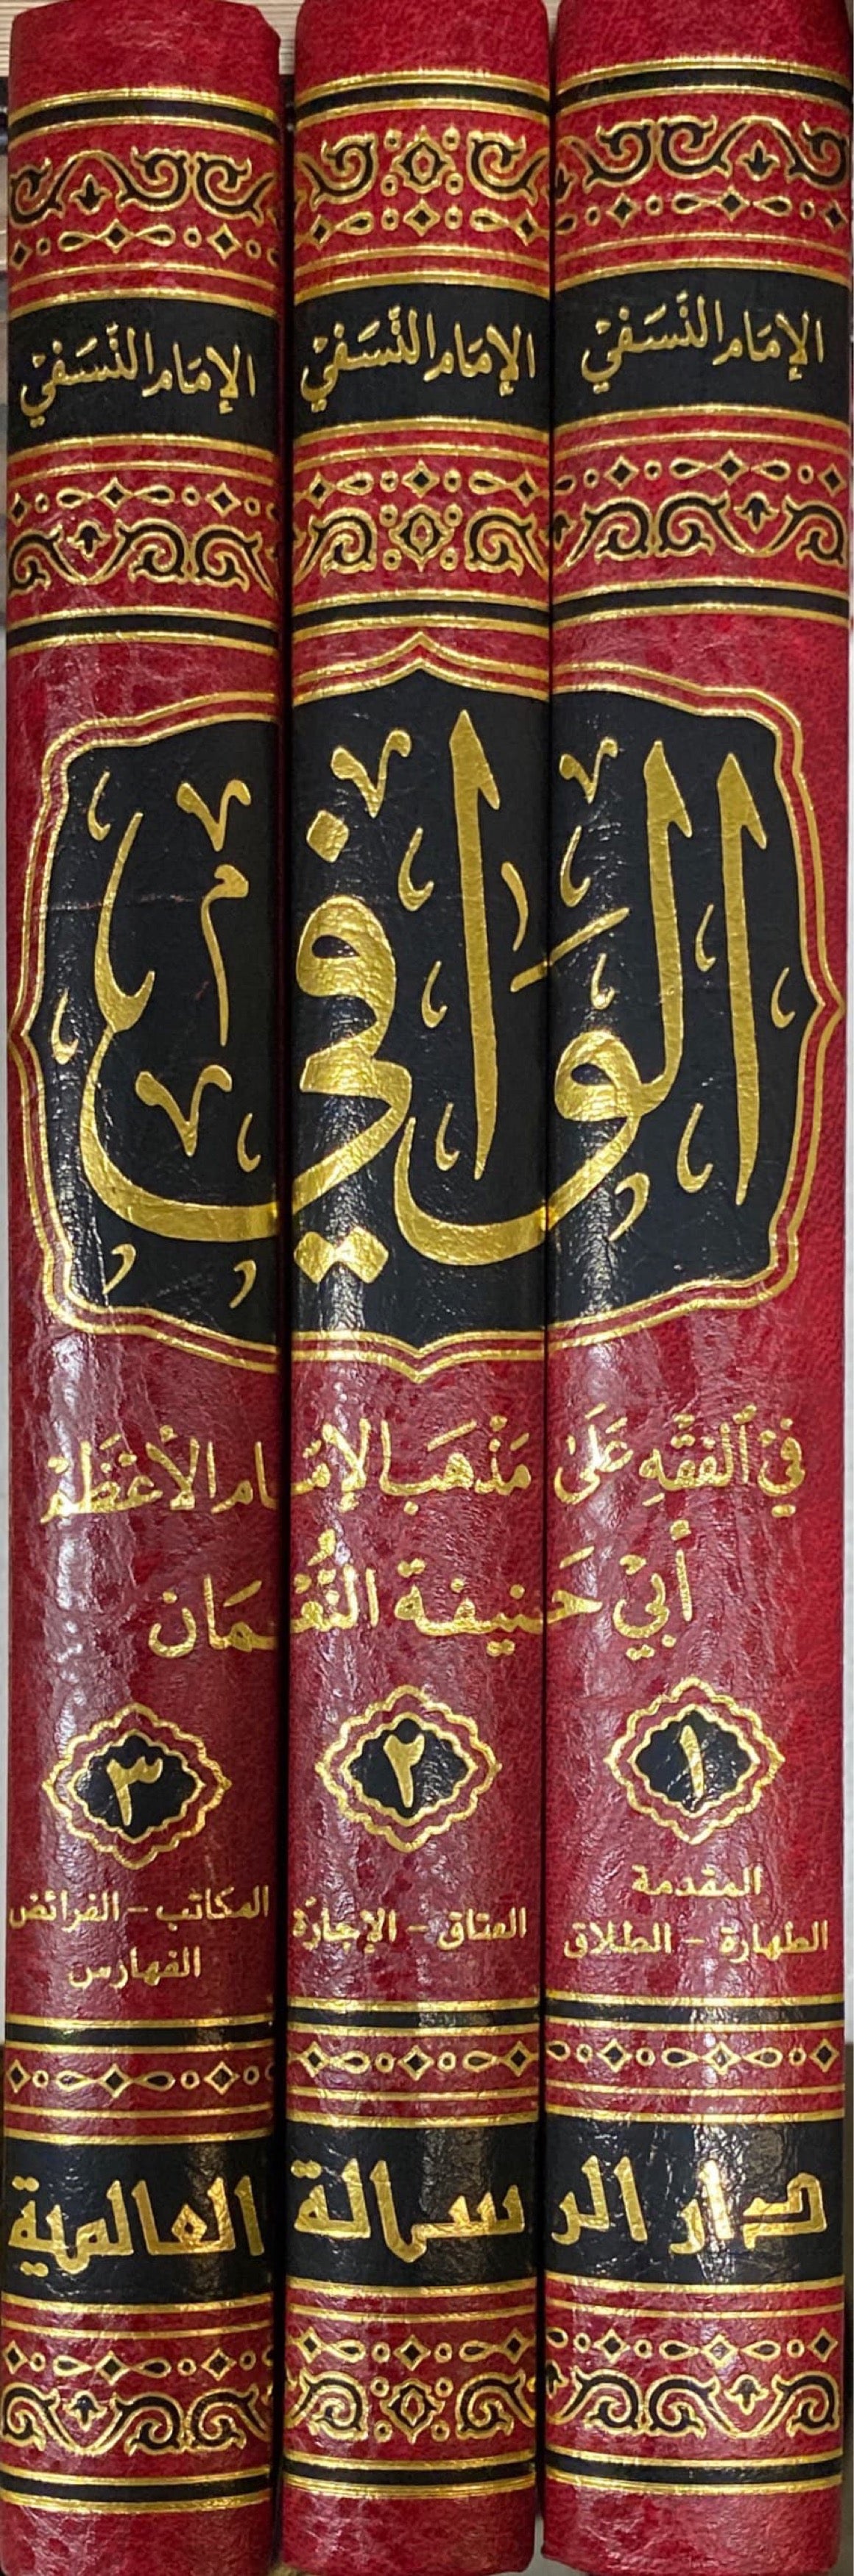 الوافي في الفقه الحنفي Al Waafi Fil Fiqh Al Hanafi (3 Vol) (Rissalah)